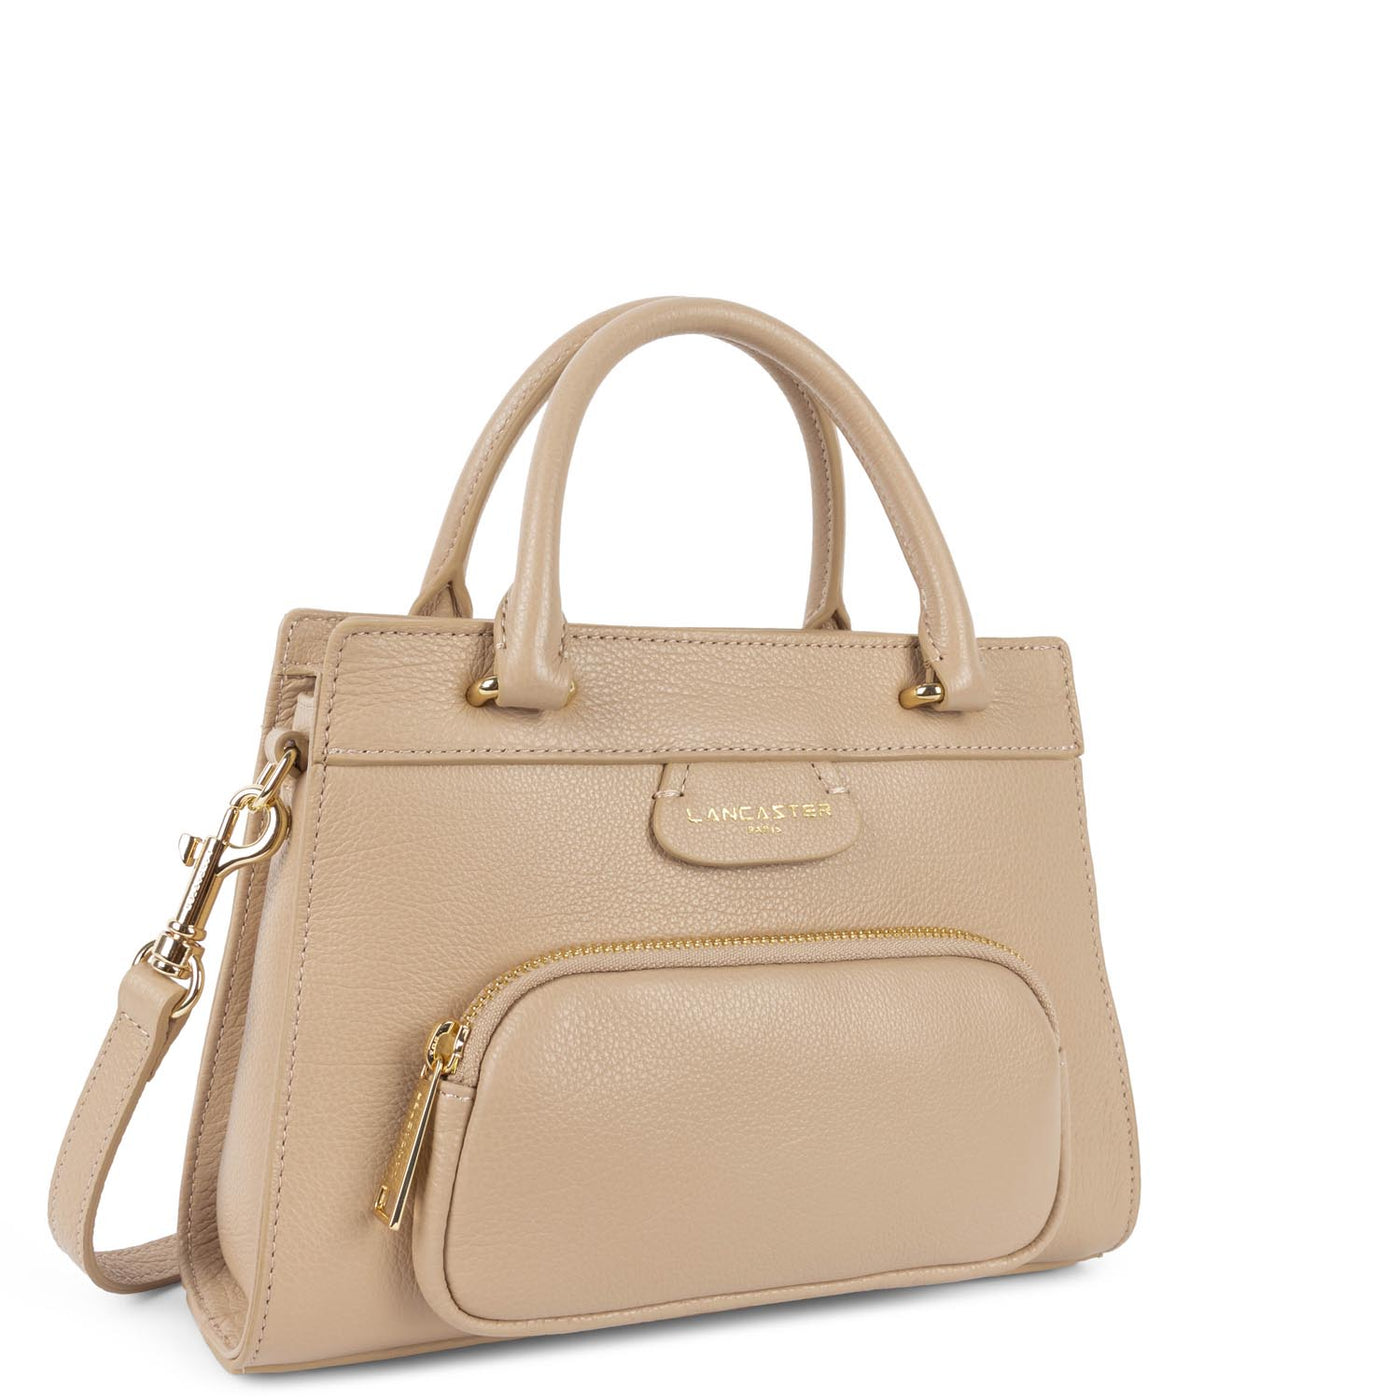 m handbag - dune #couleur_beige-fonc